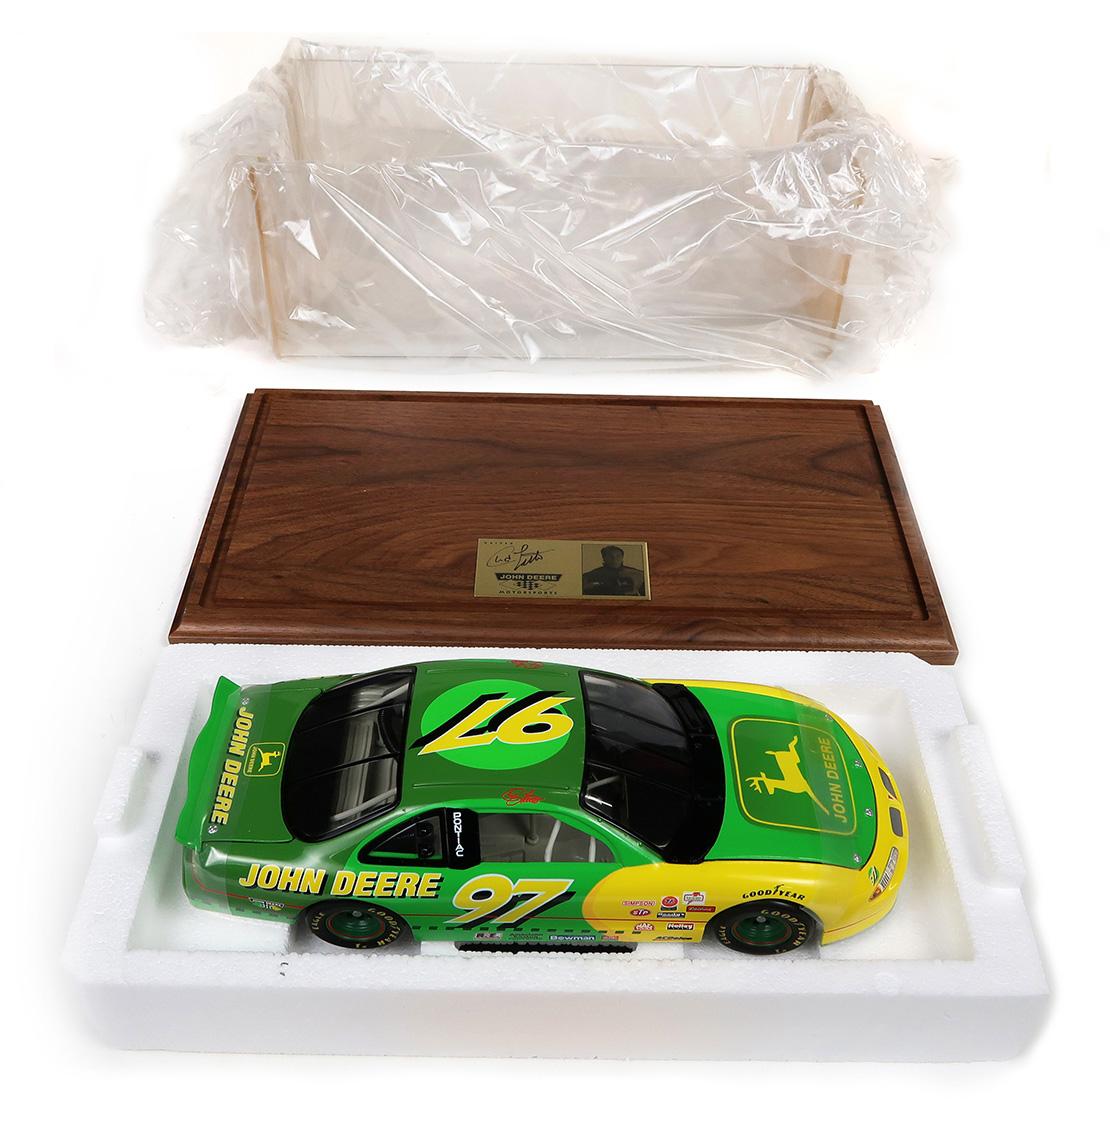 Ertl John Deere Motorsports, w/display case, Ser. # 6272, MIB, 16" L